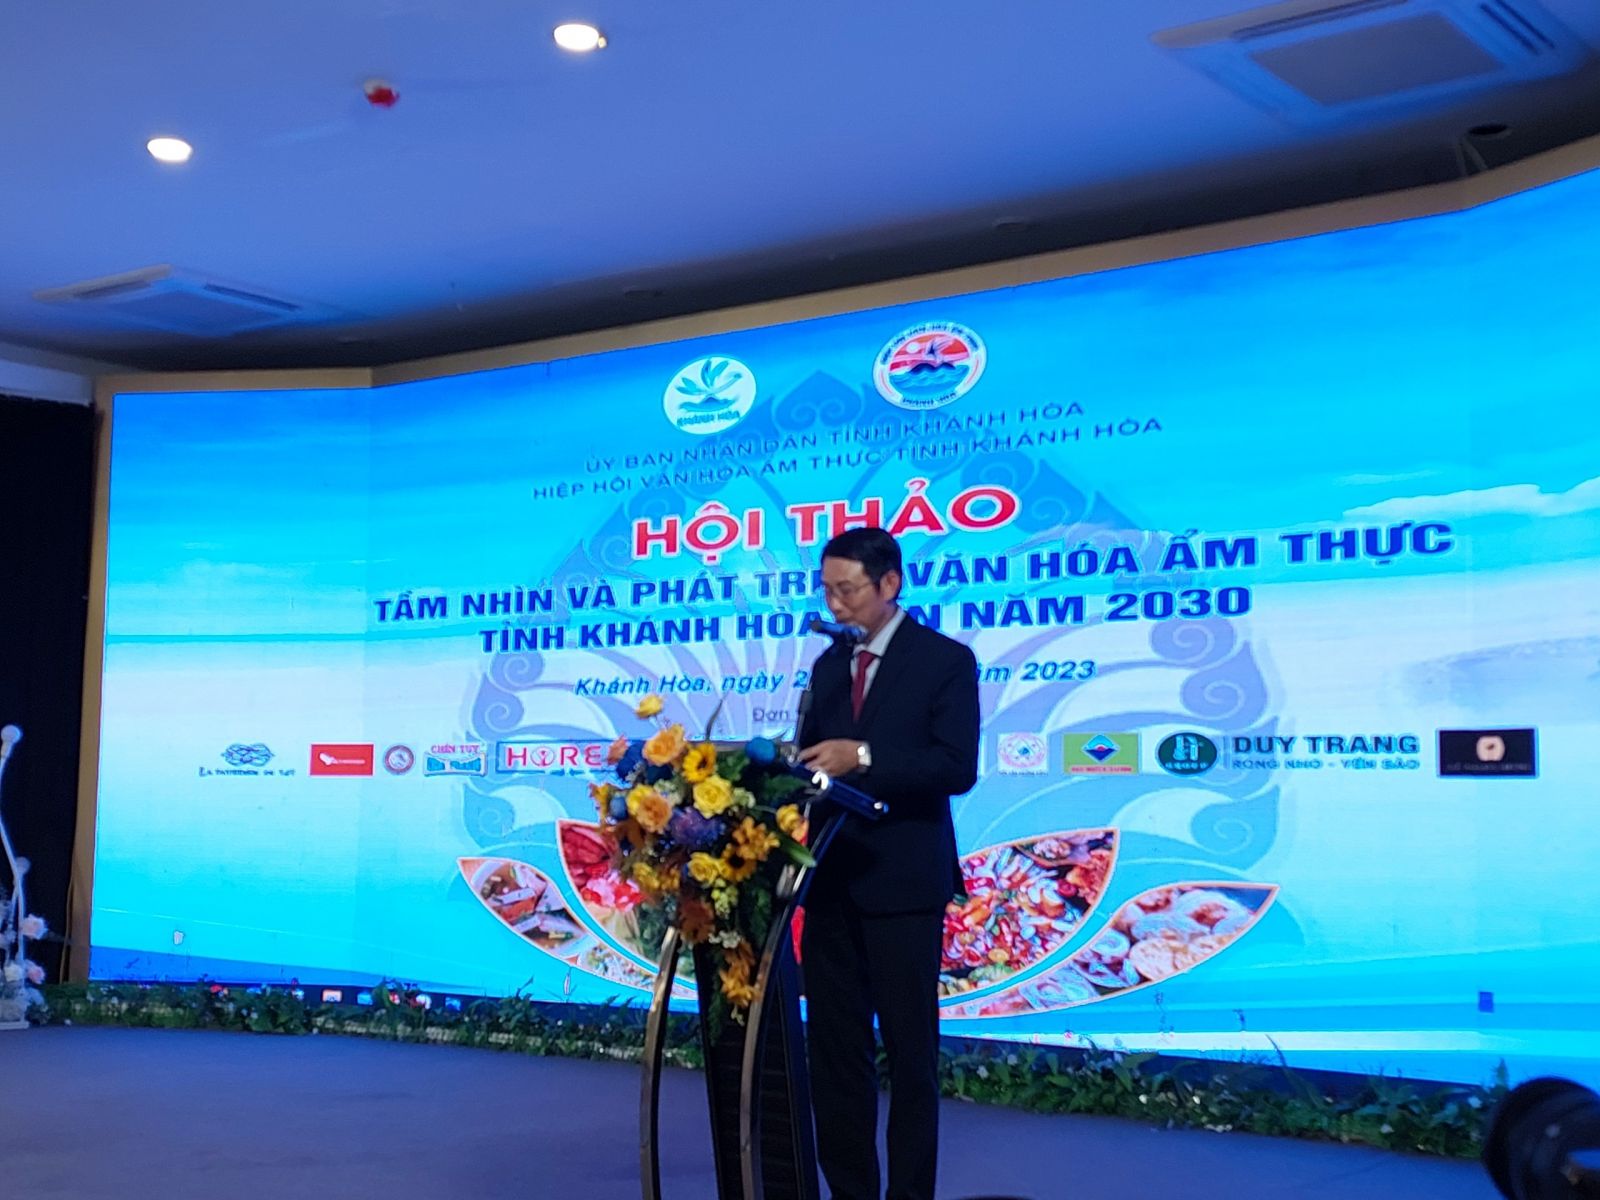 Ассоциация кулинарной культуры Вьетнама наградила сертификатами на 3 кулинарных блюда Кханьхоа, отмеченных в путешествии по поиску типичных кулинарных культурных ценностей Вьетнама.